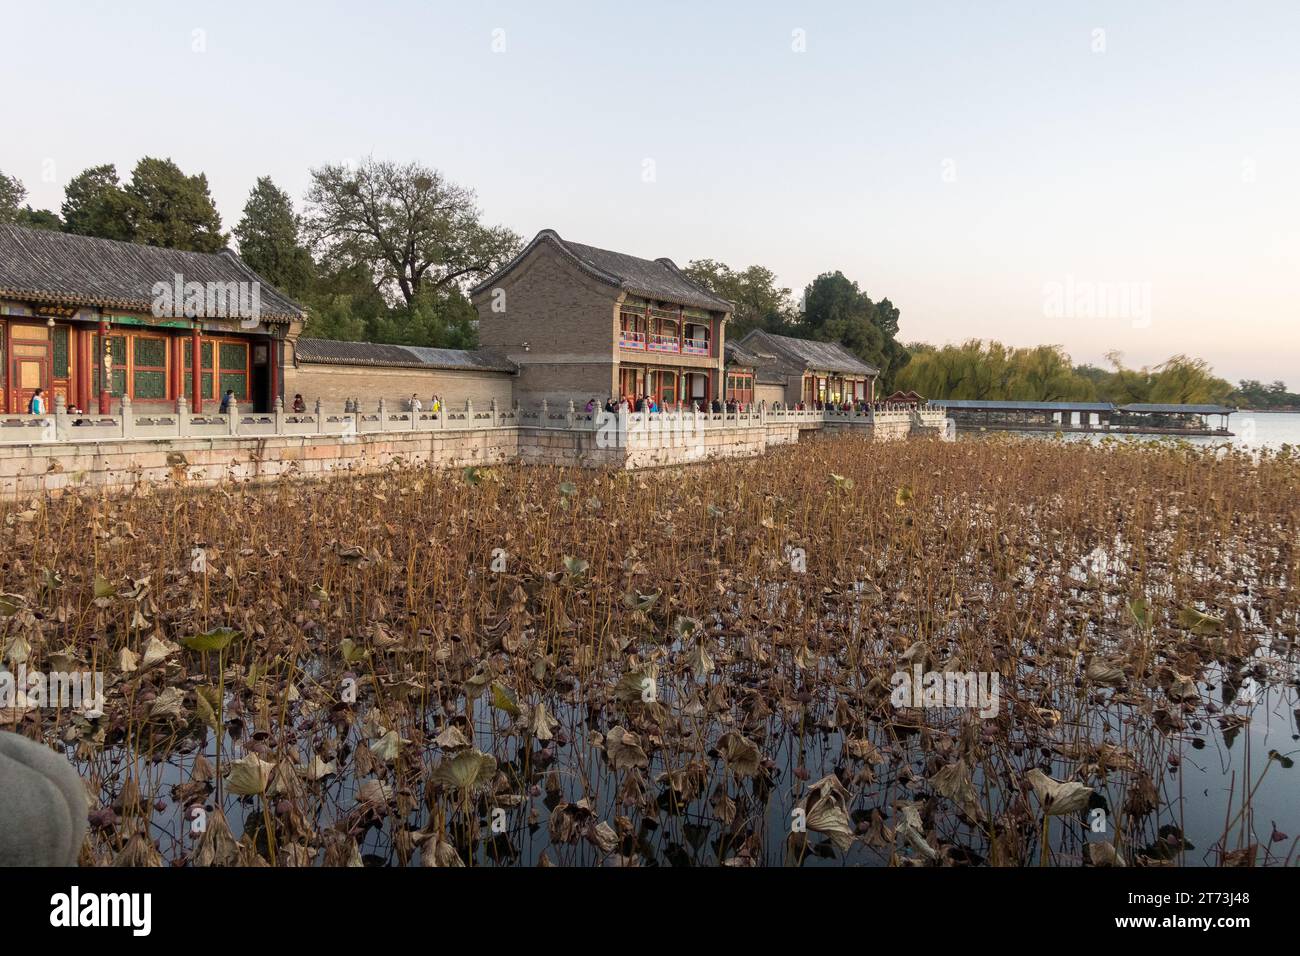 Ancien palais d'été ou parc Yuanming, jardin d'une clarté parfaite est un ancien palais impérial, construit au 17e siècle. Banque D'Images